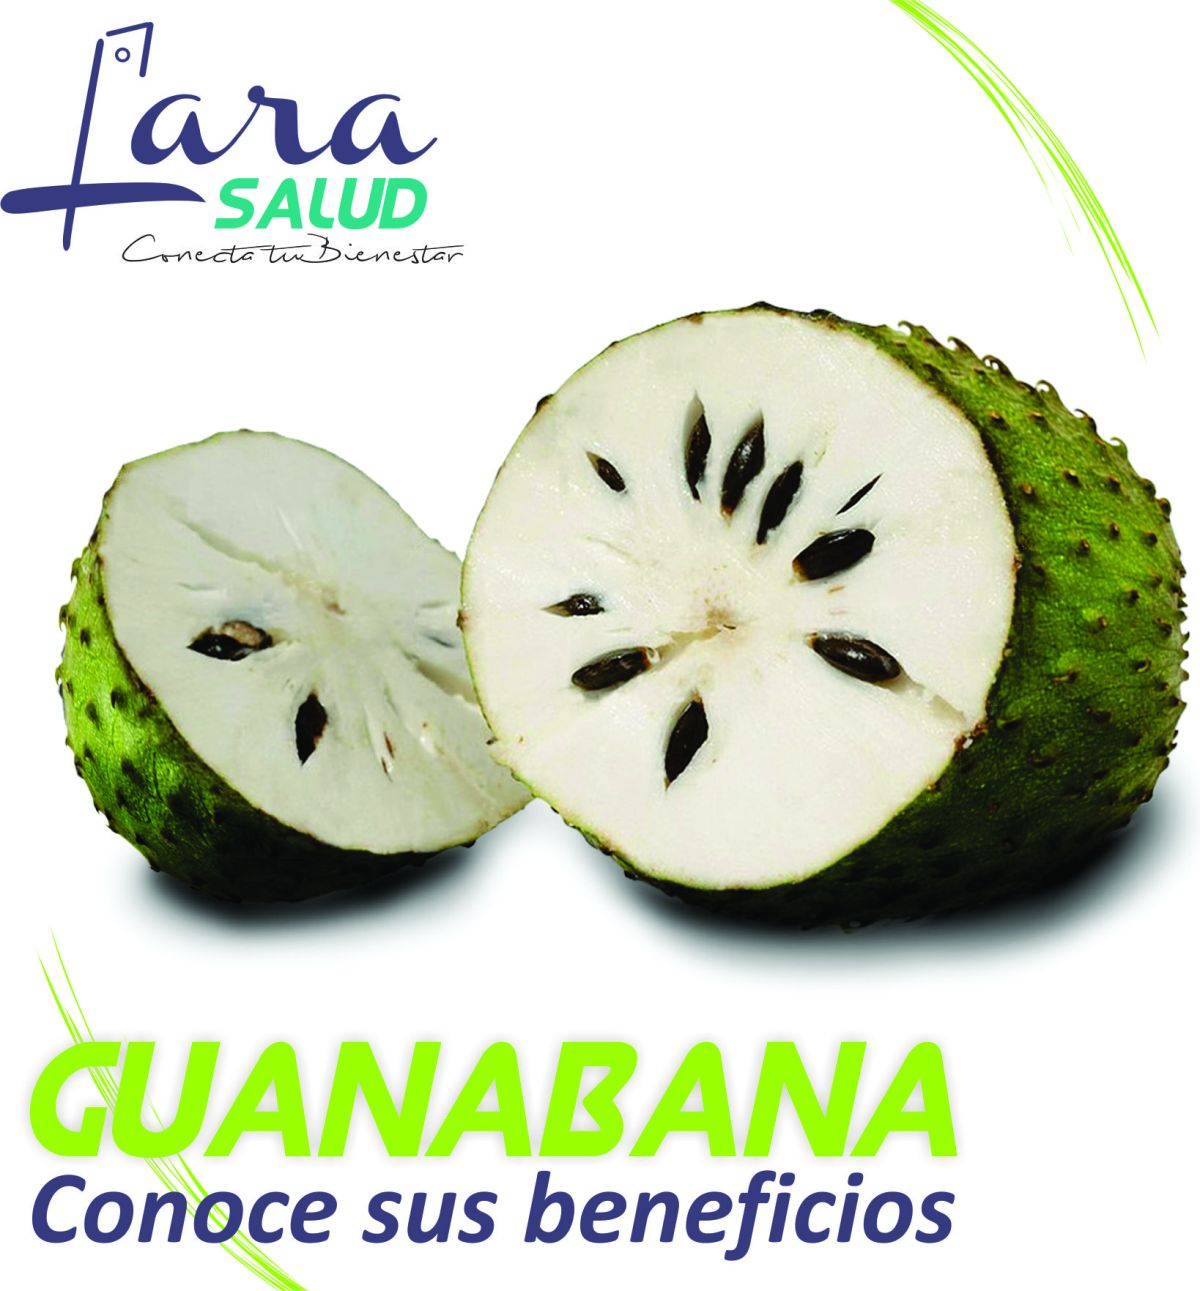 La fruta de la semana es la Guanábana.